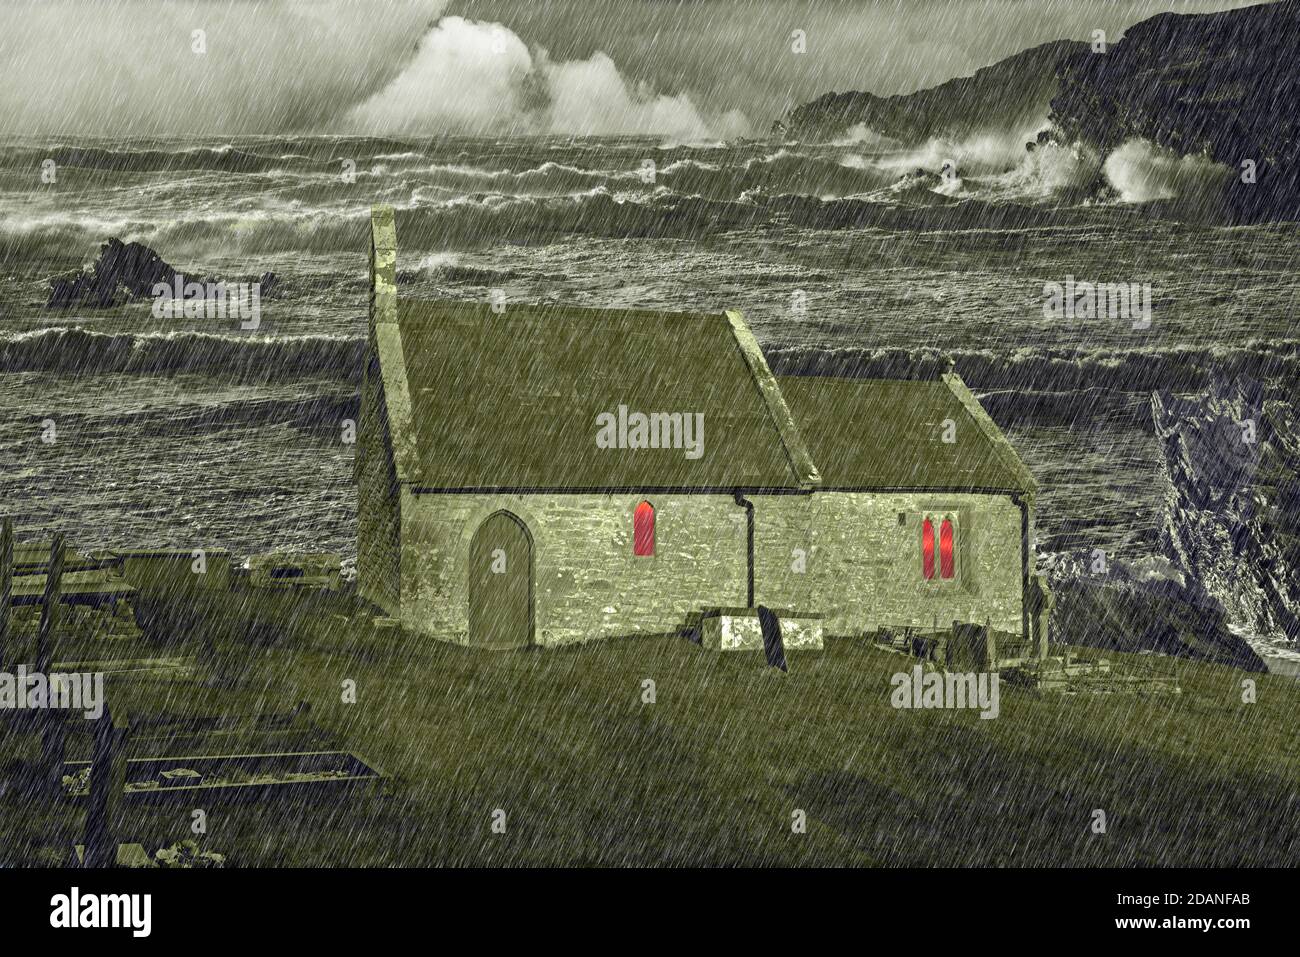 St. Michael's Church ist eine mittelalterliche Kirche in Anglesey. In diesem Fantasiebild wurde das wilde Meer und der sintflutartige Regen hinzugefügt. Stockfoto